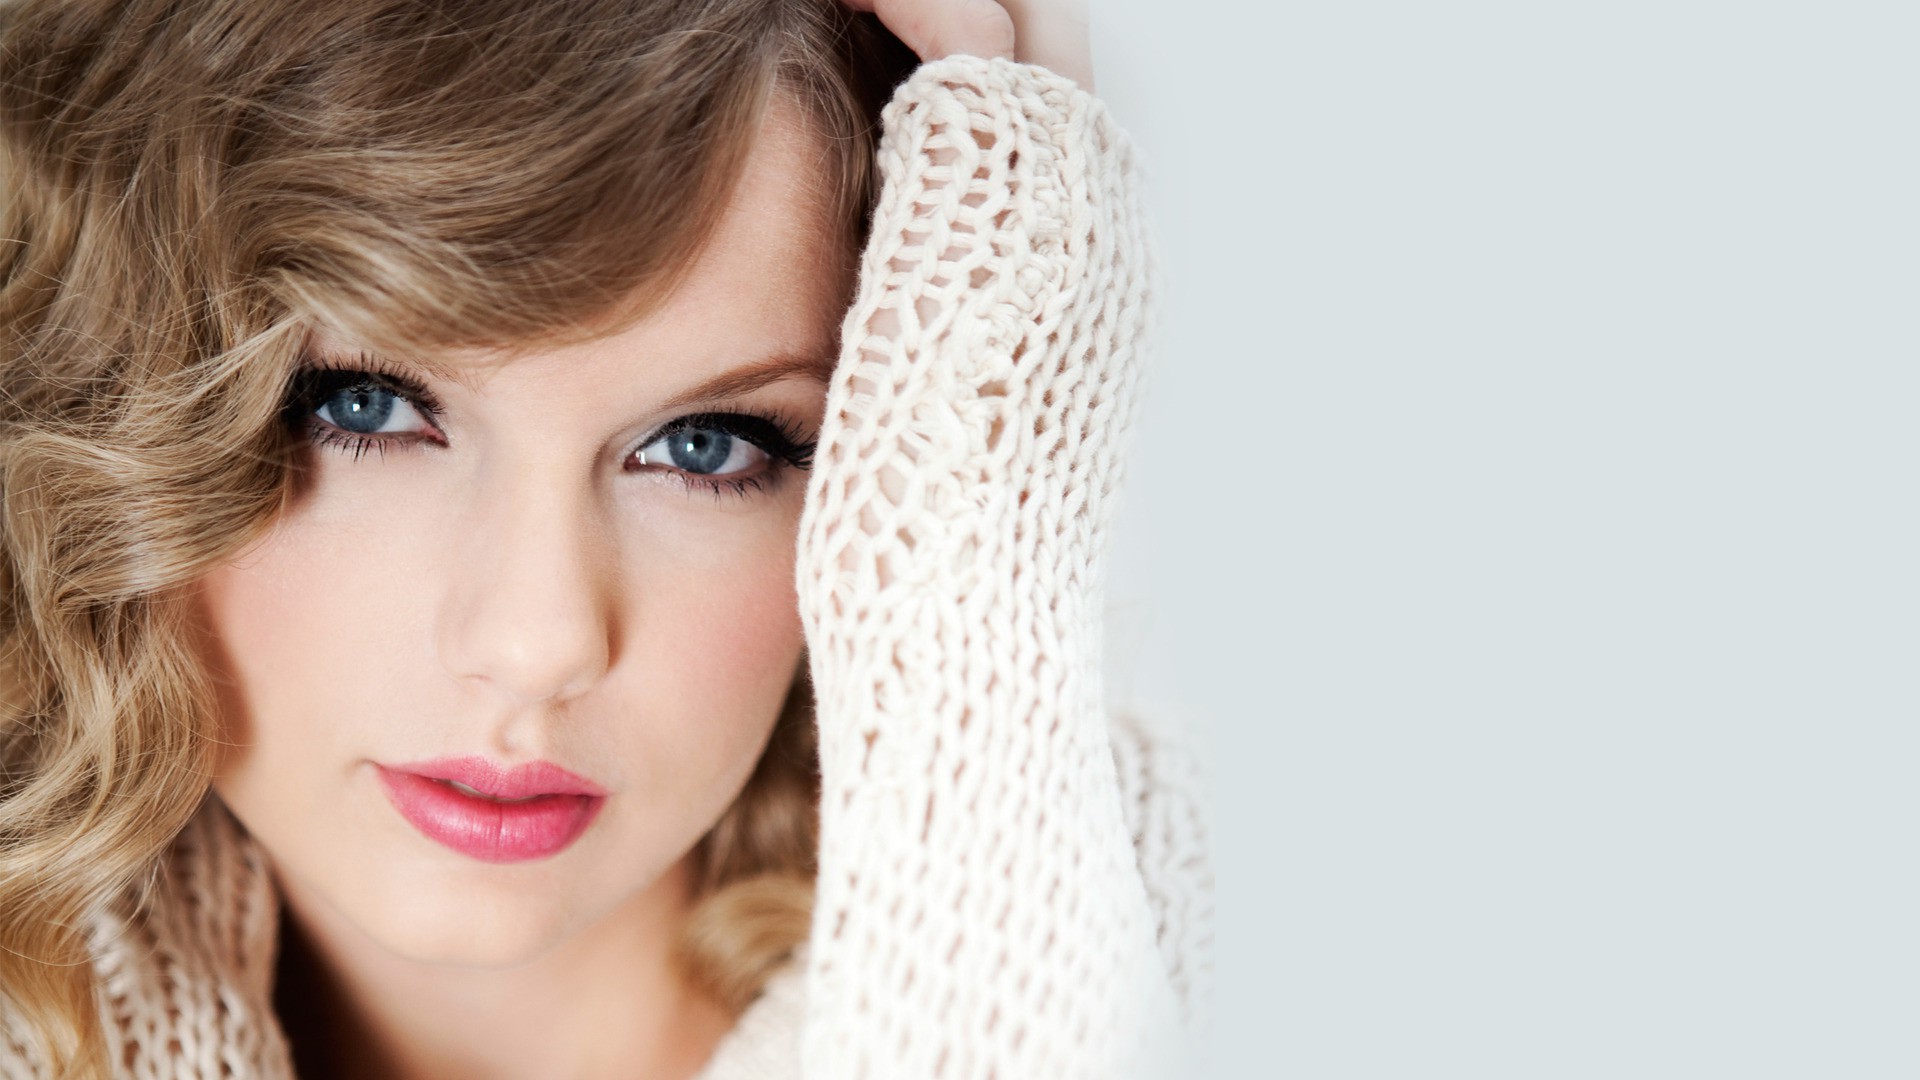 Taylor Swift Celebrity Blonde Blue Eyes Singer Netted